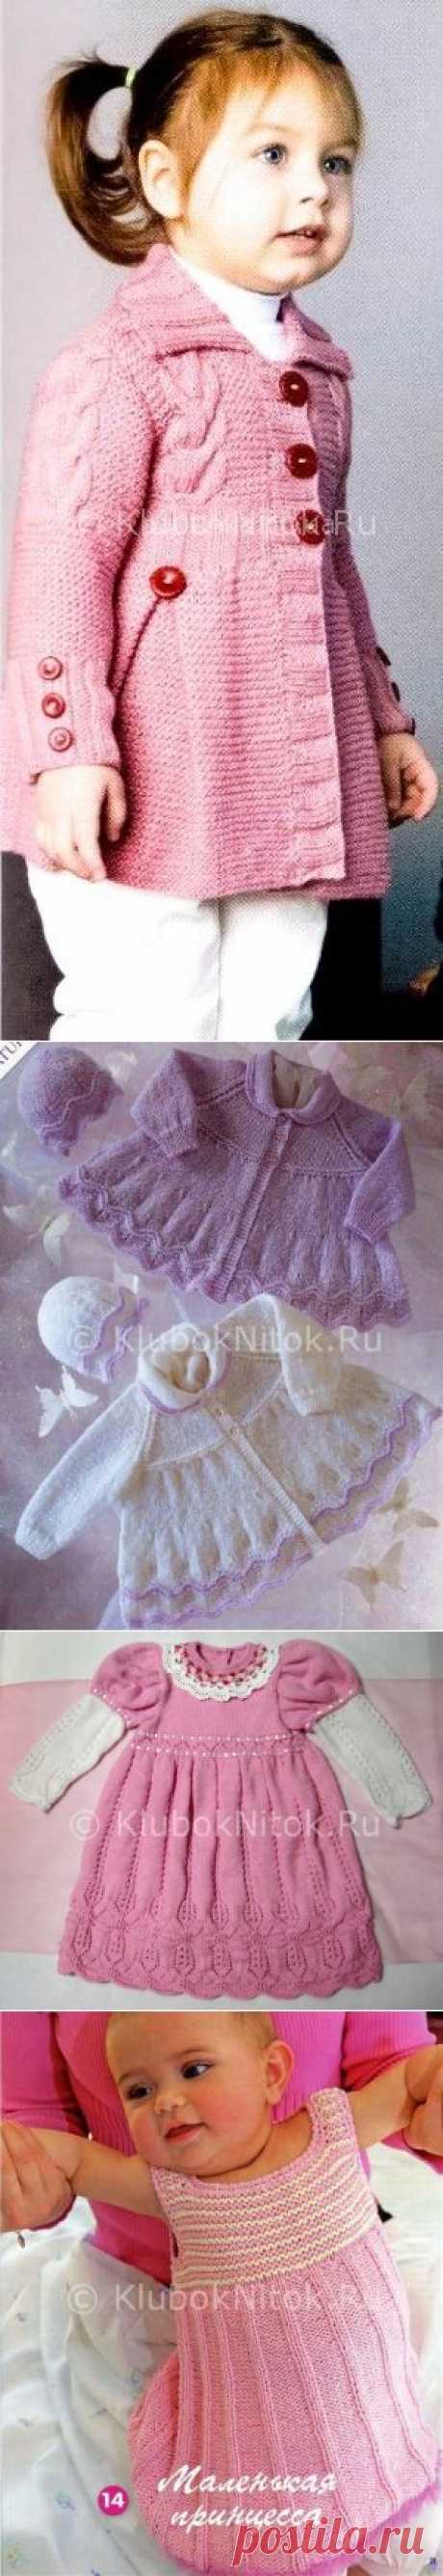 Розовое пальто для малышки | Вязание для девочек | Вязание спицами и крючком. Схемы вязания.